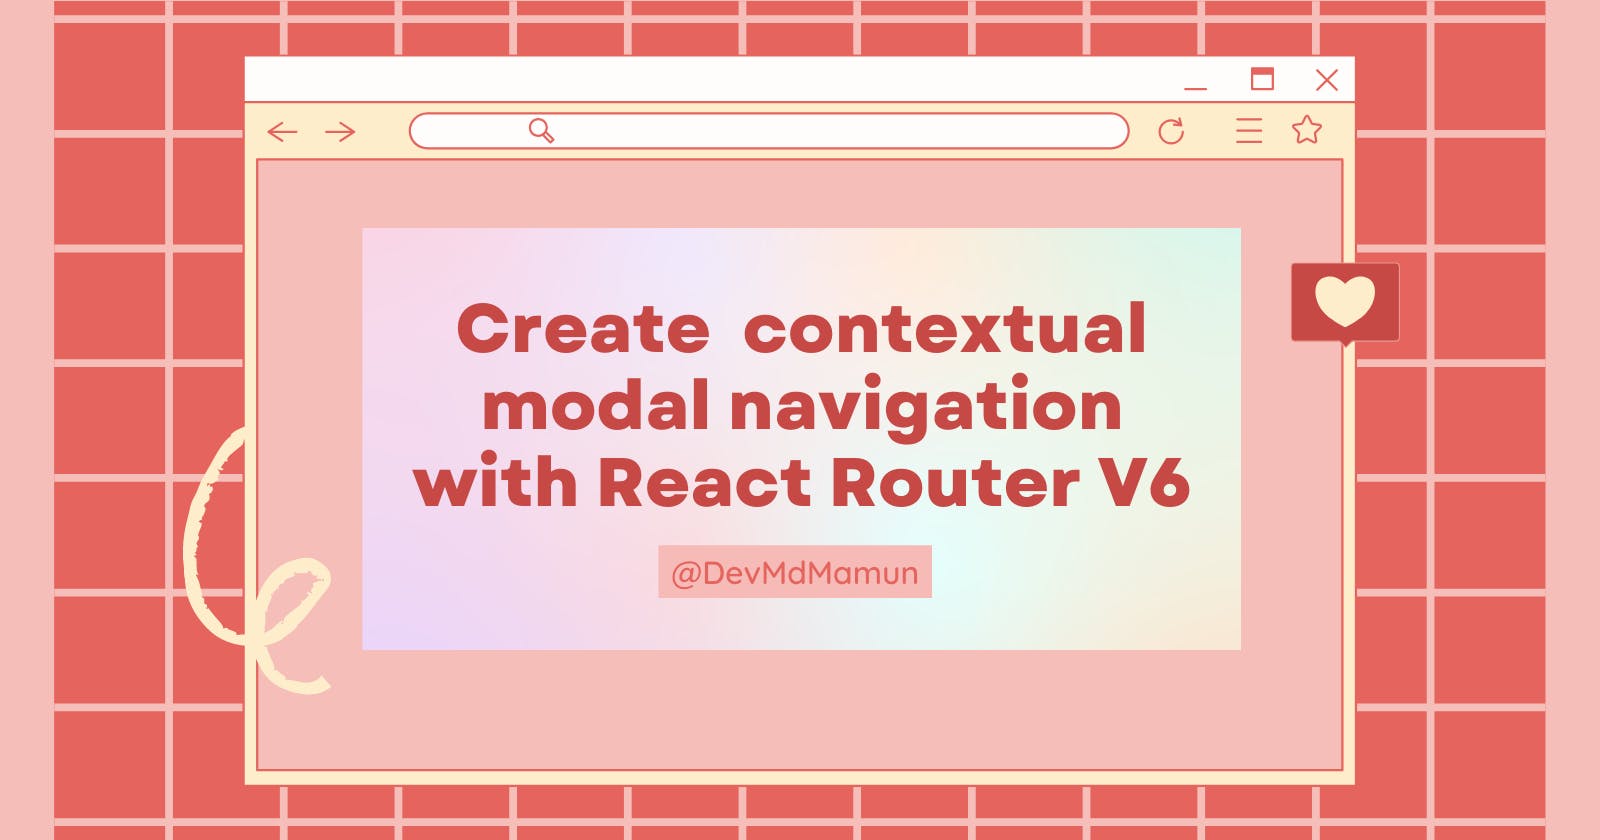 Create contextual modal navigation with React Router V6.